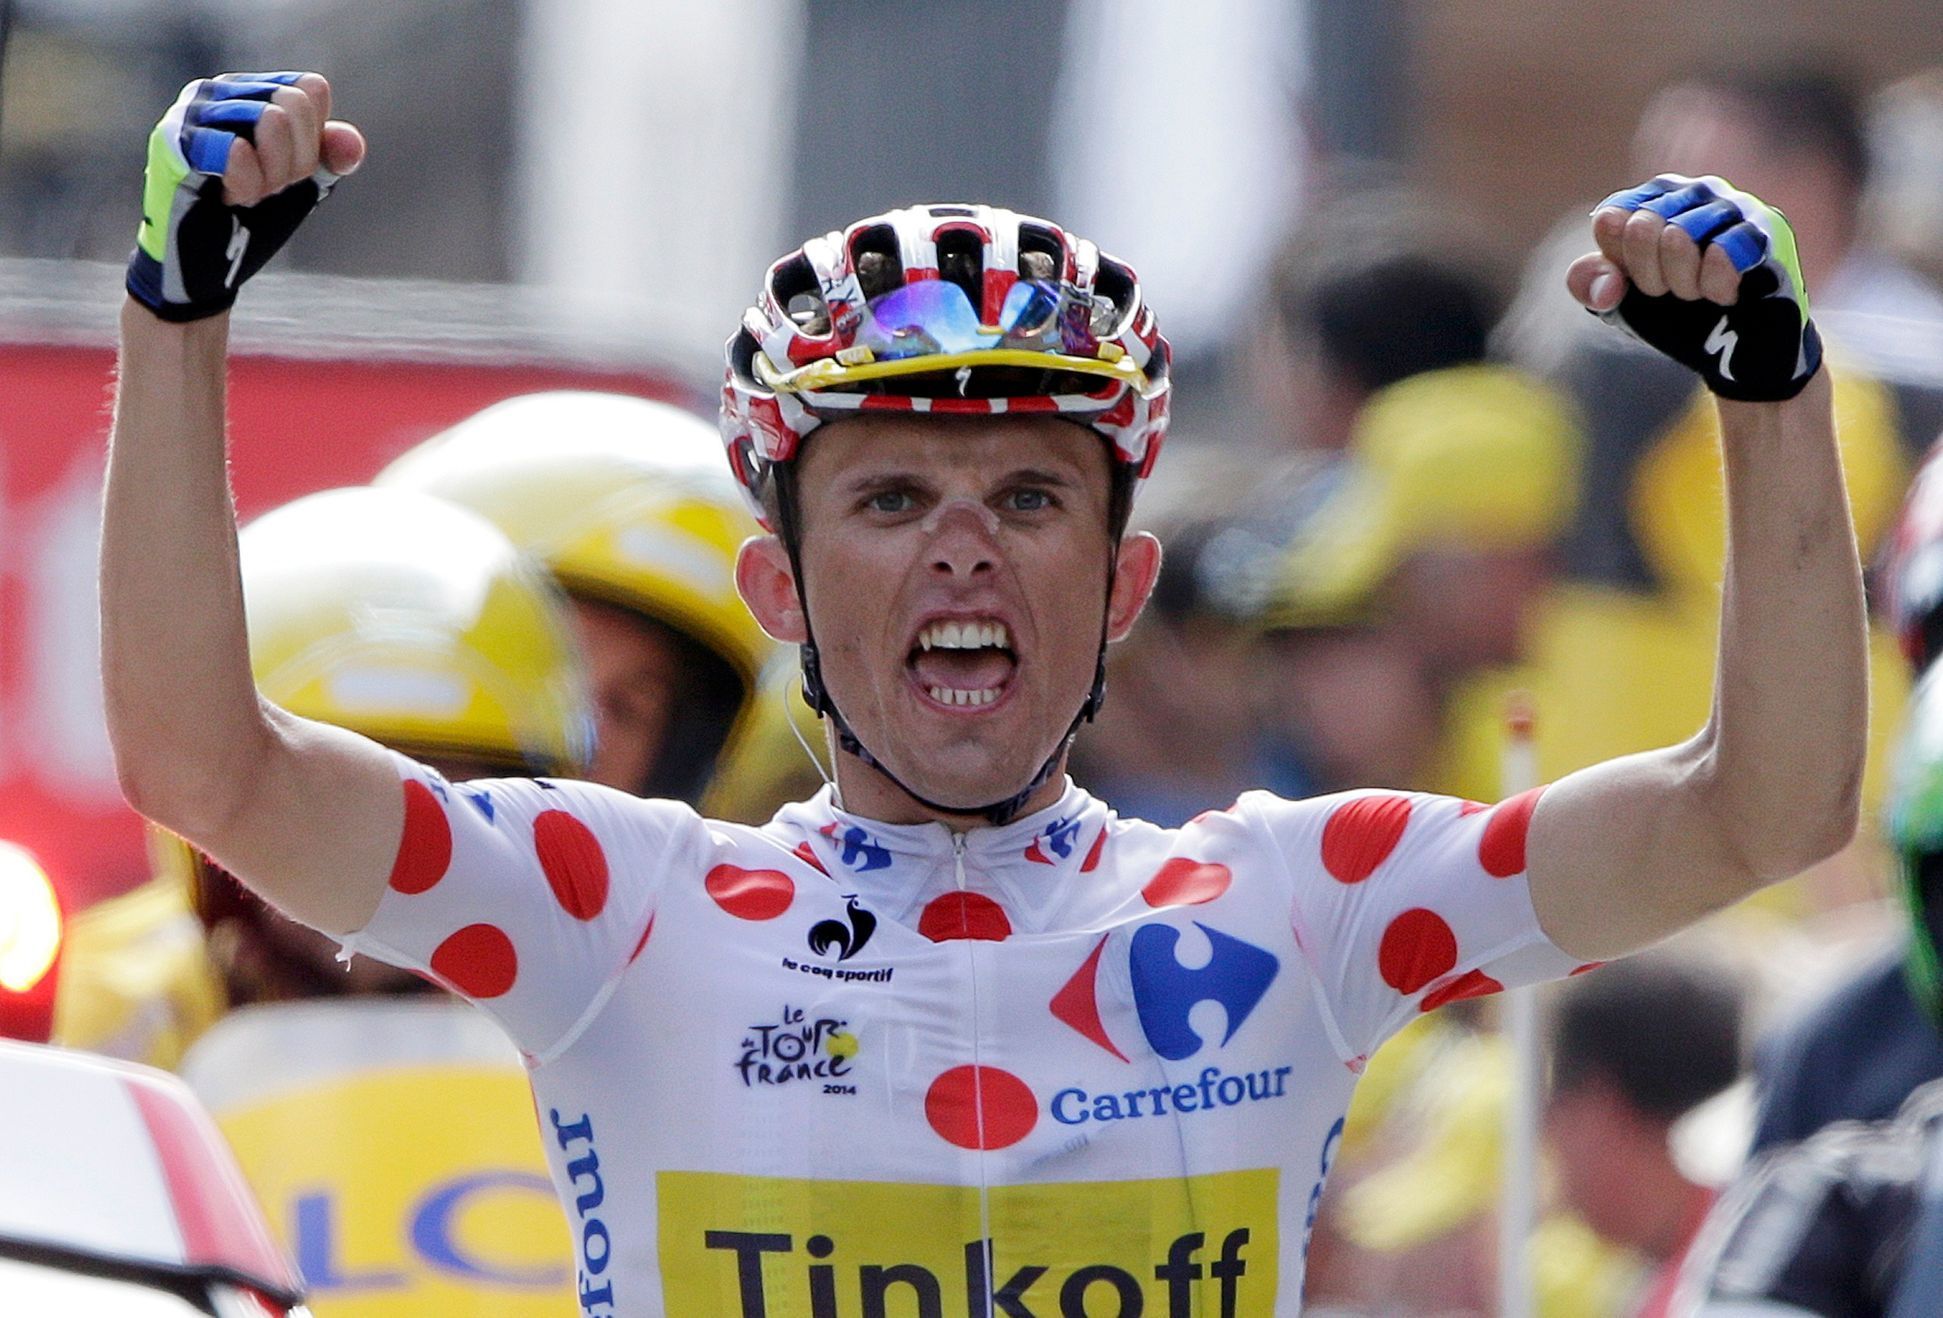 Majka slaví vítězství v etapě na Tour de France 2014